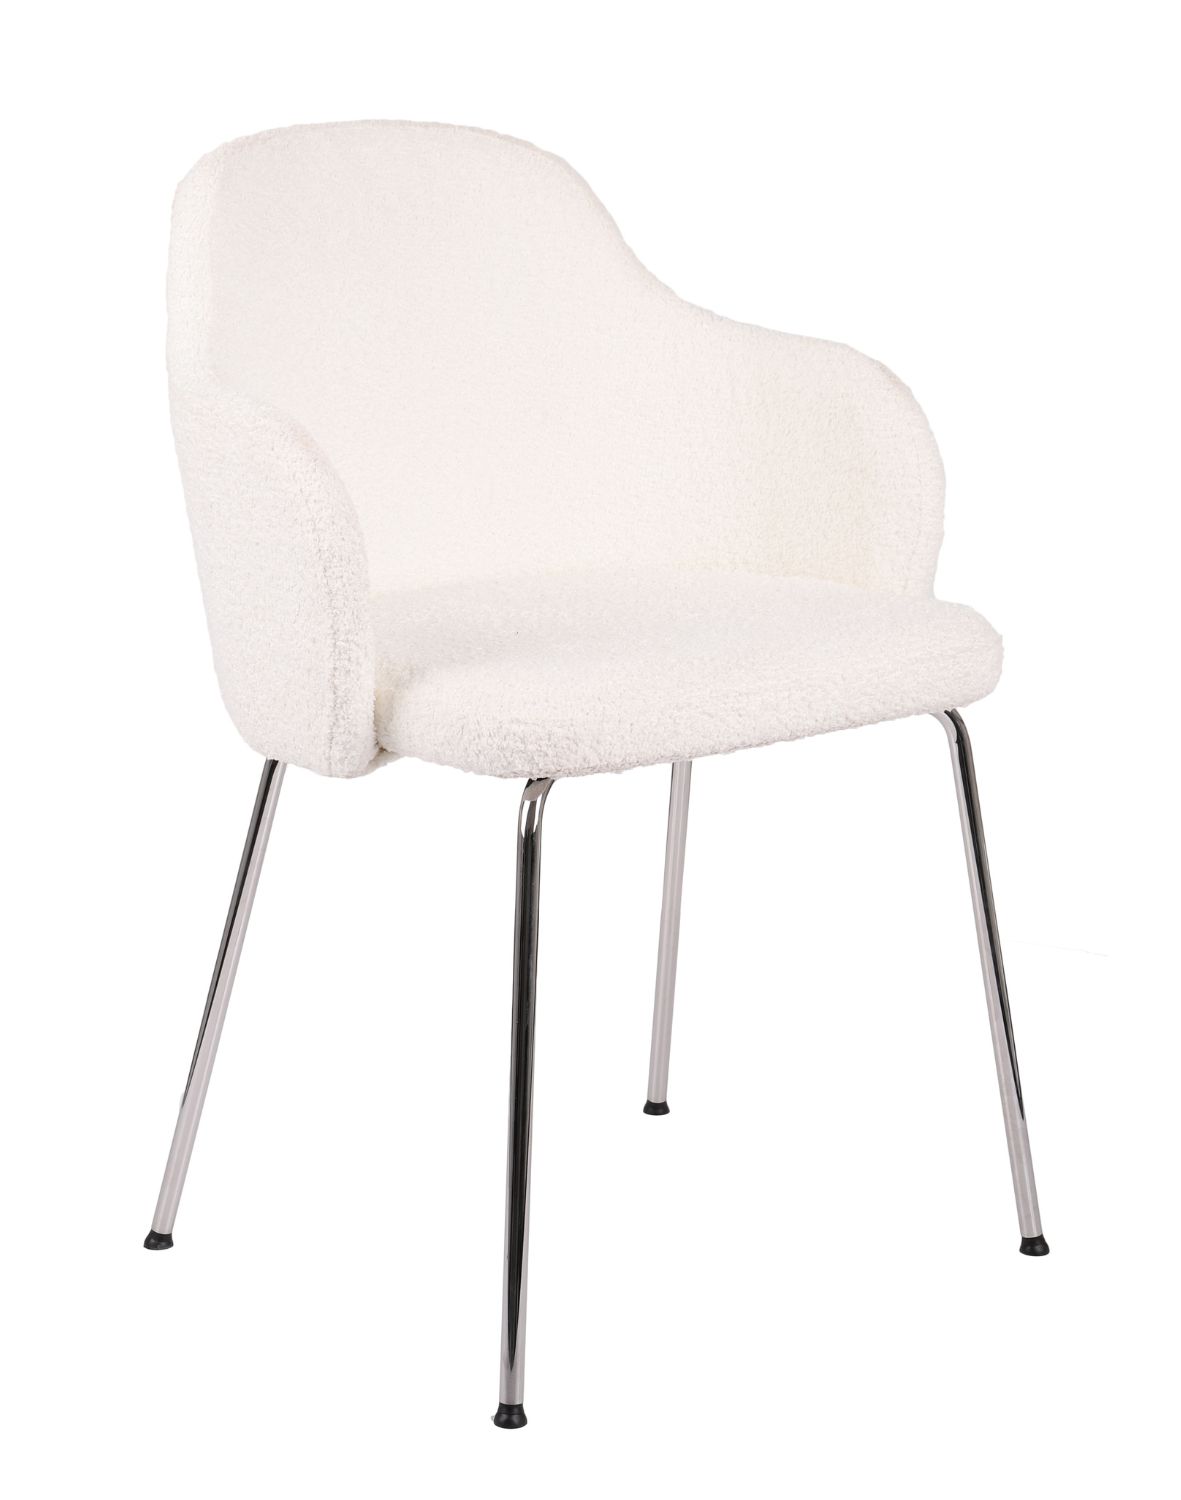 krzesło jadalniane aura chrome w tkaninie boucle białe na srebrnych nogach